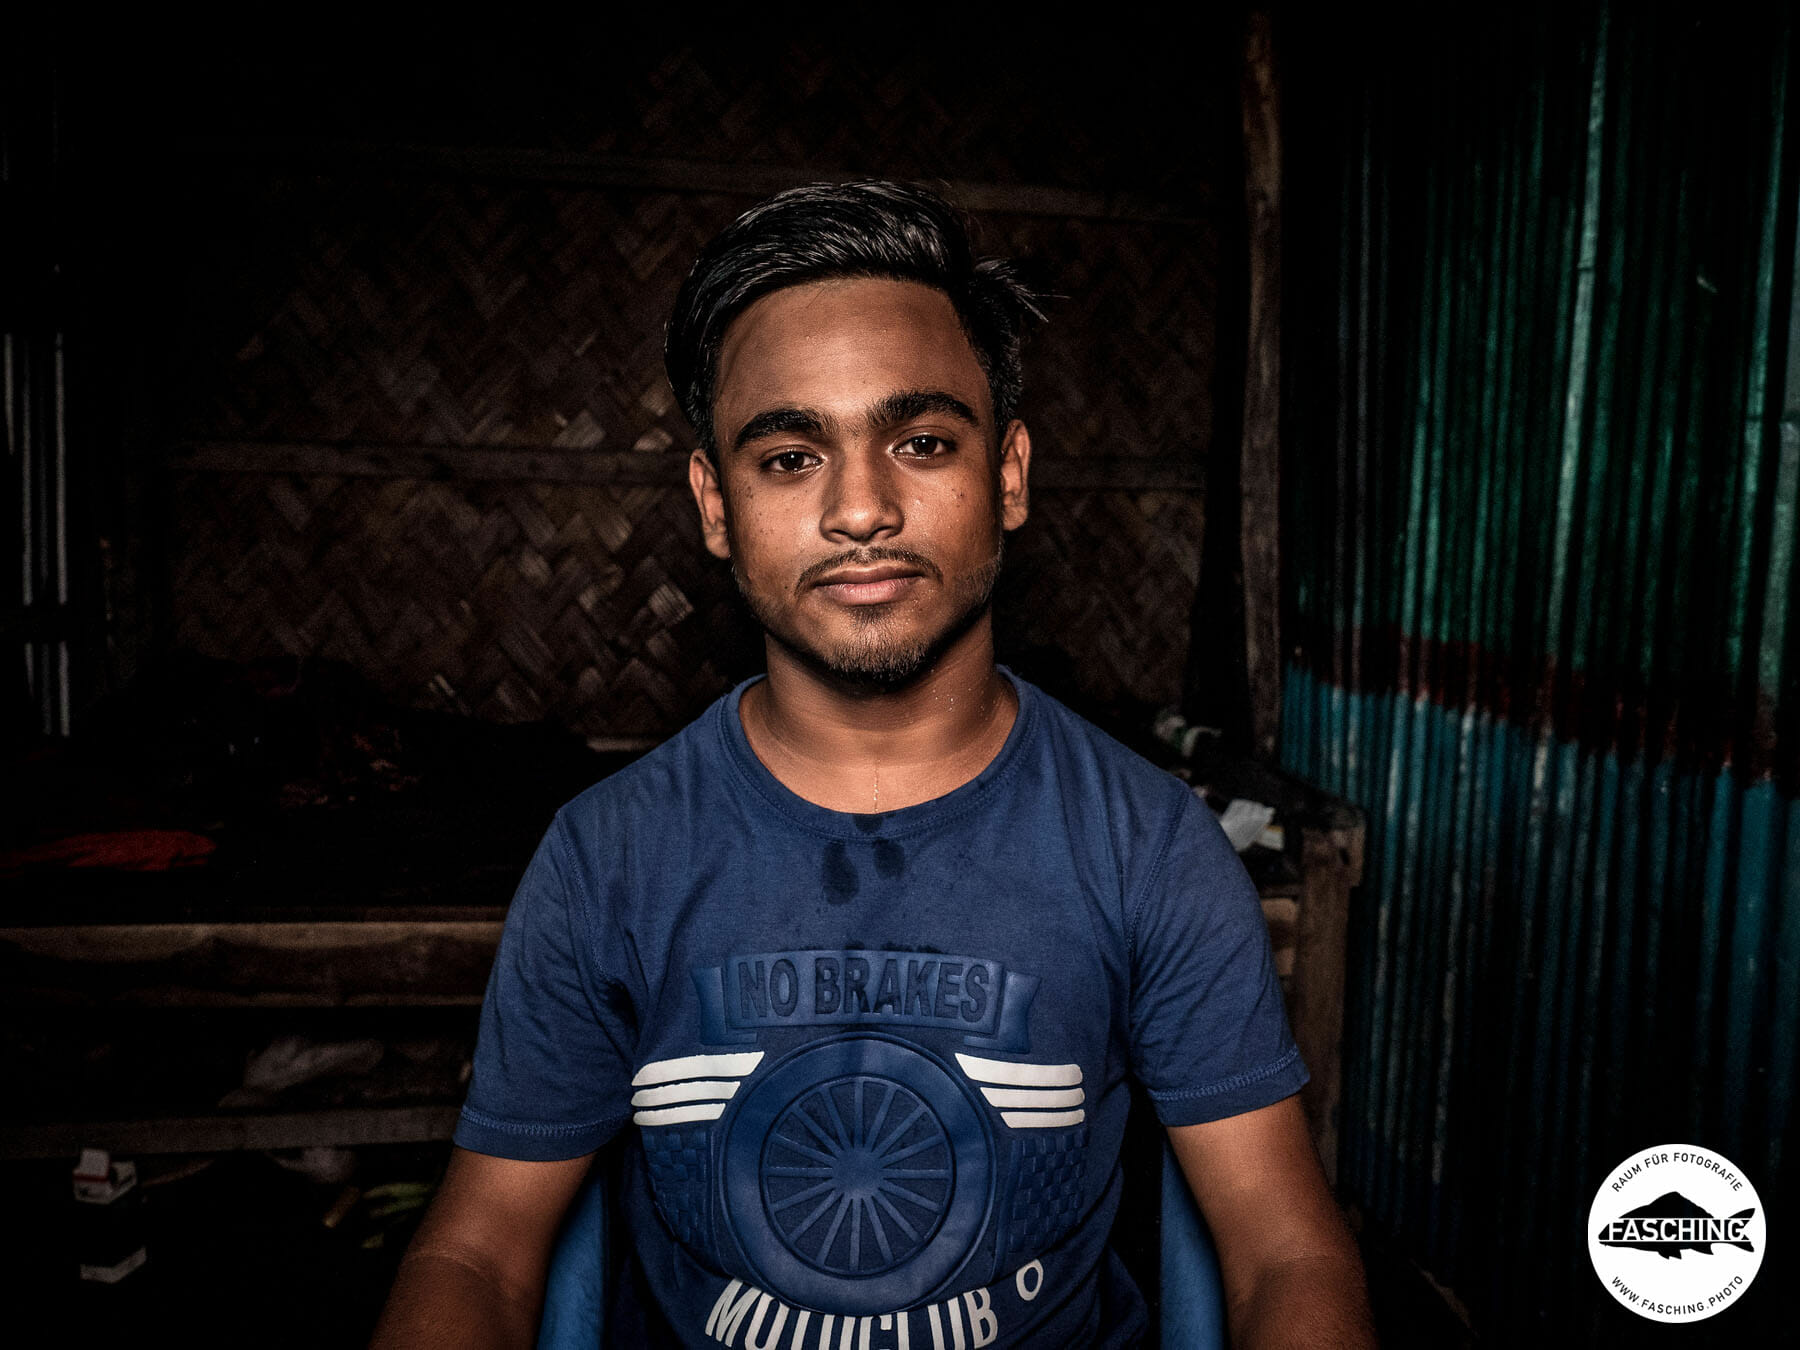 Reinhard und Luca Fasching reisten zusammen nach Bangladesh um eine Dokumentation über Shipbreaking in diesem Land zu fotografieren